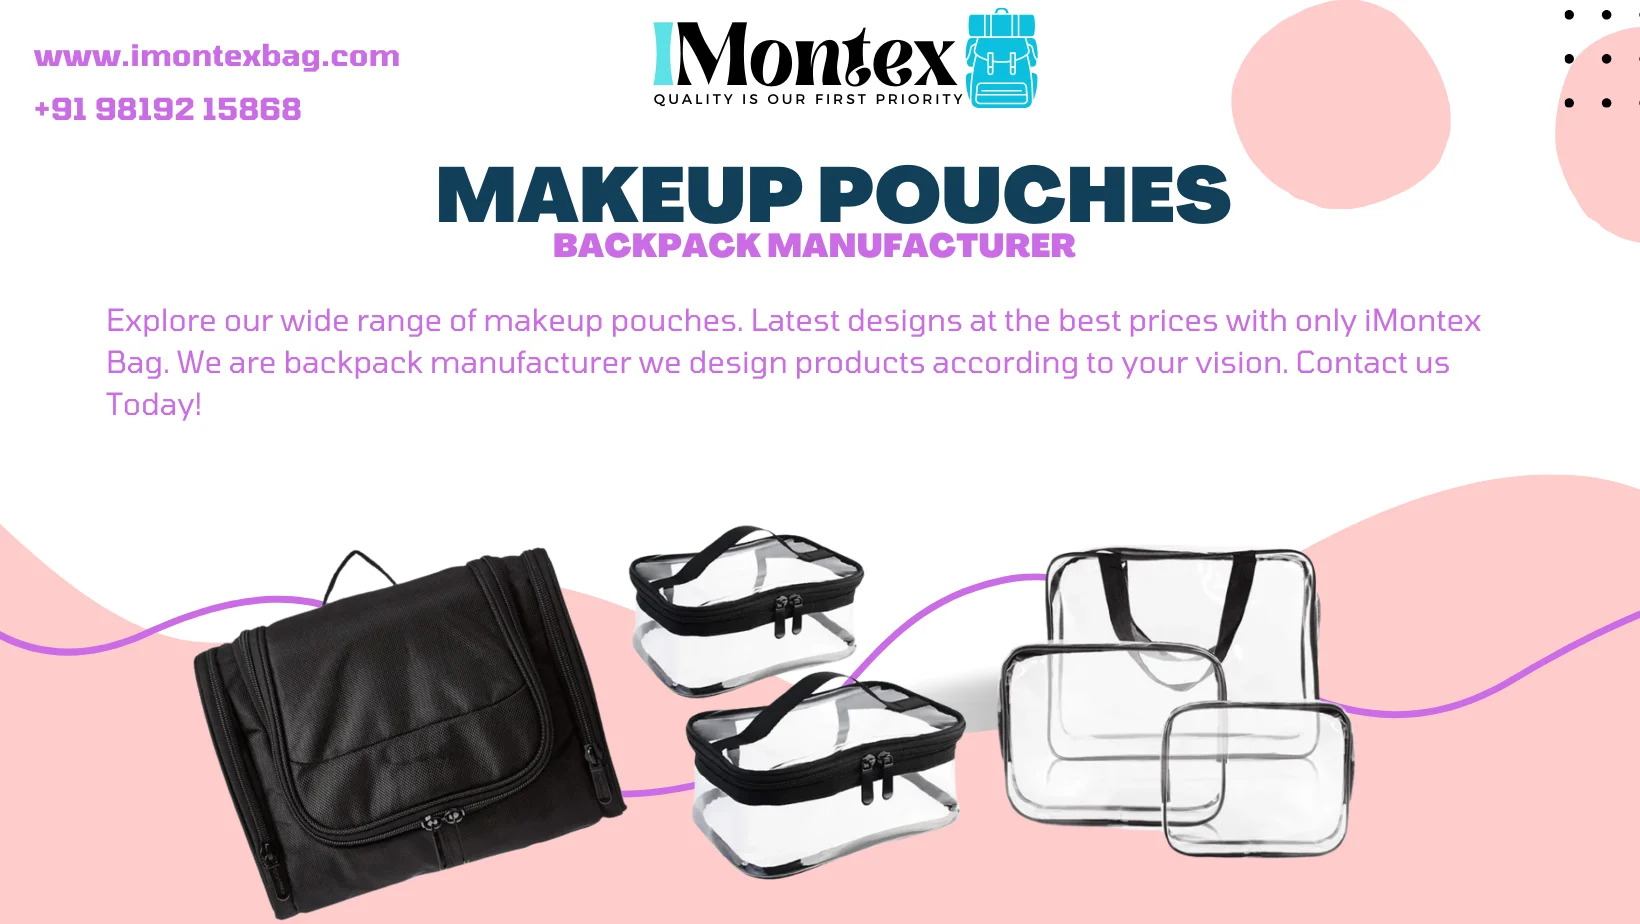 custom makeup pouches maker, supplier, manufacturer